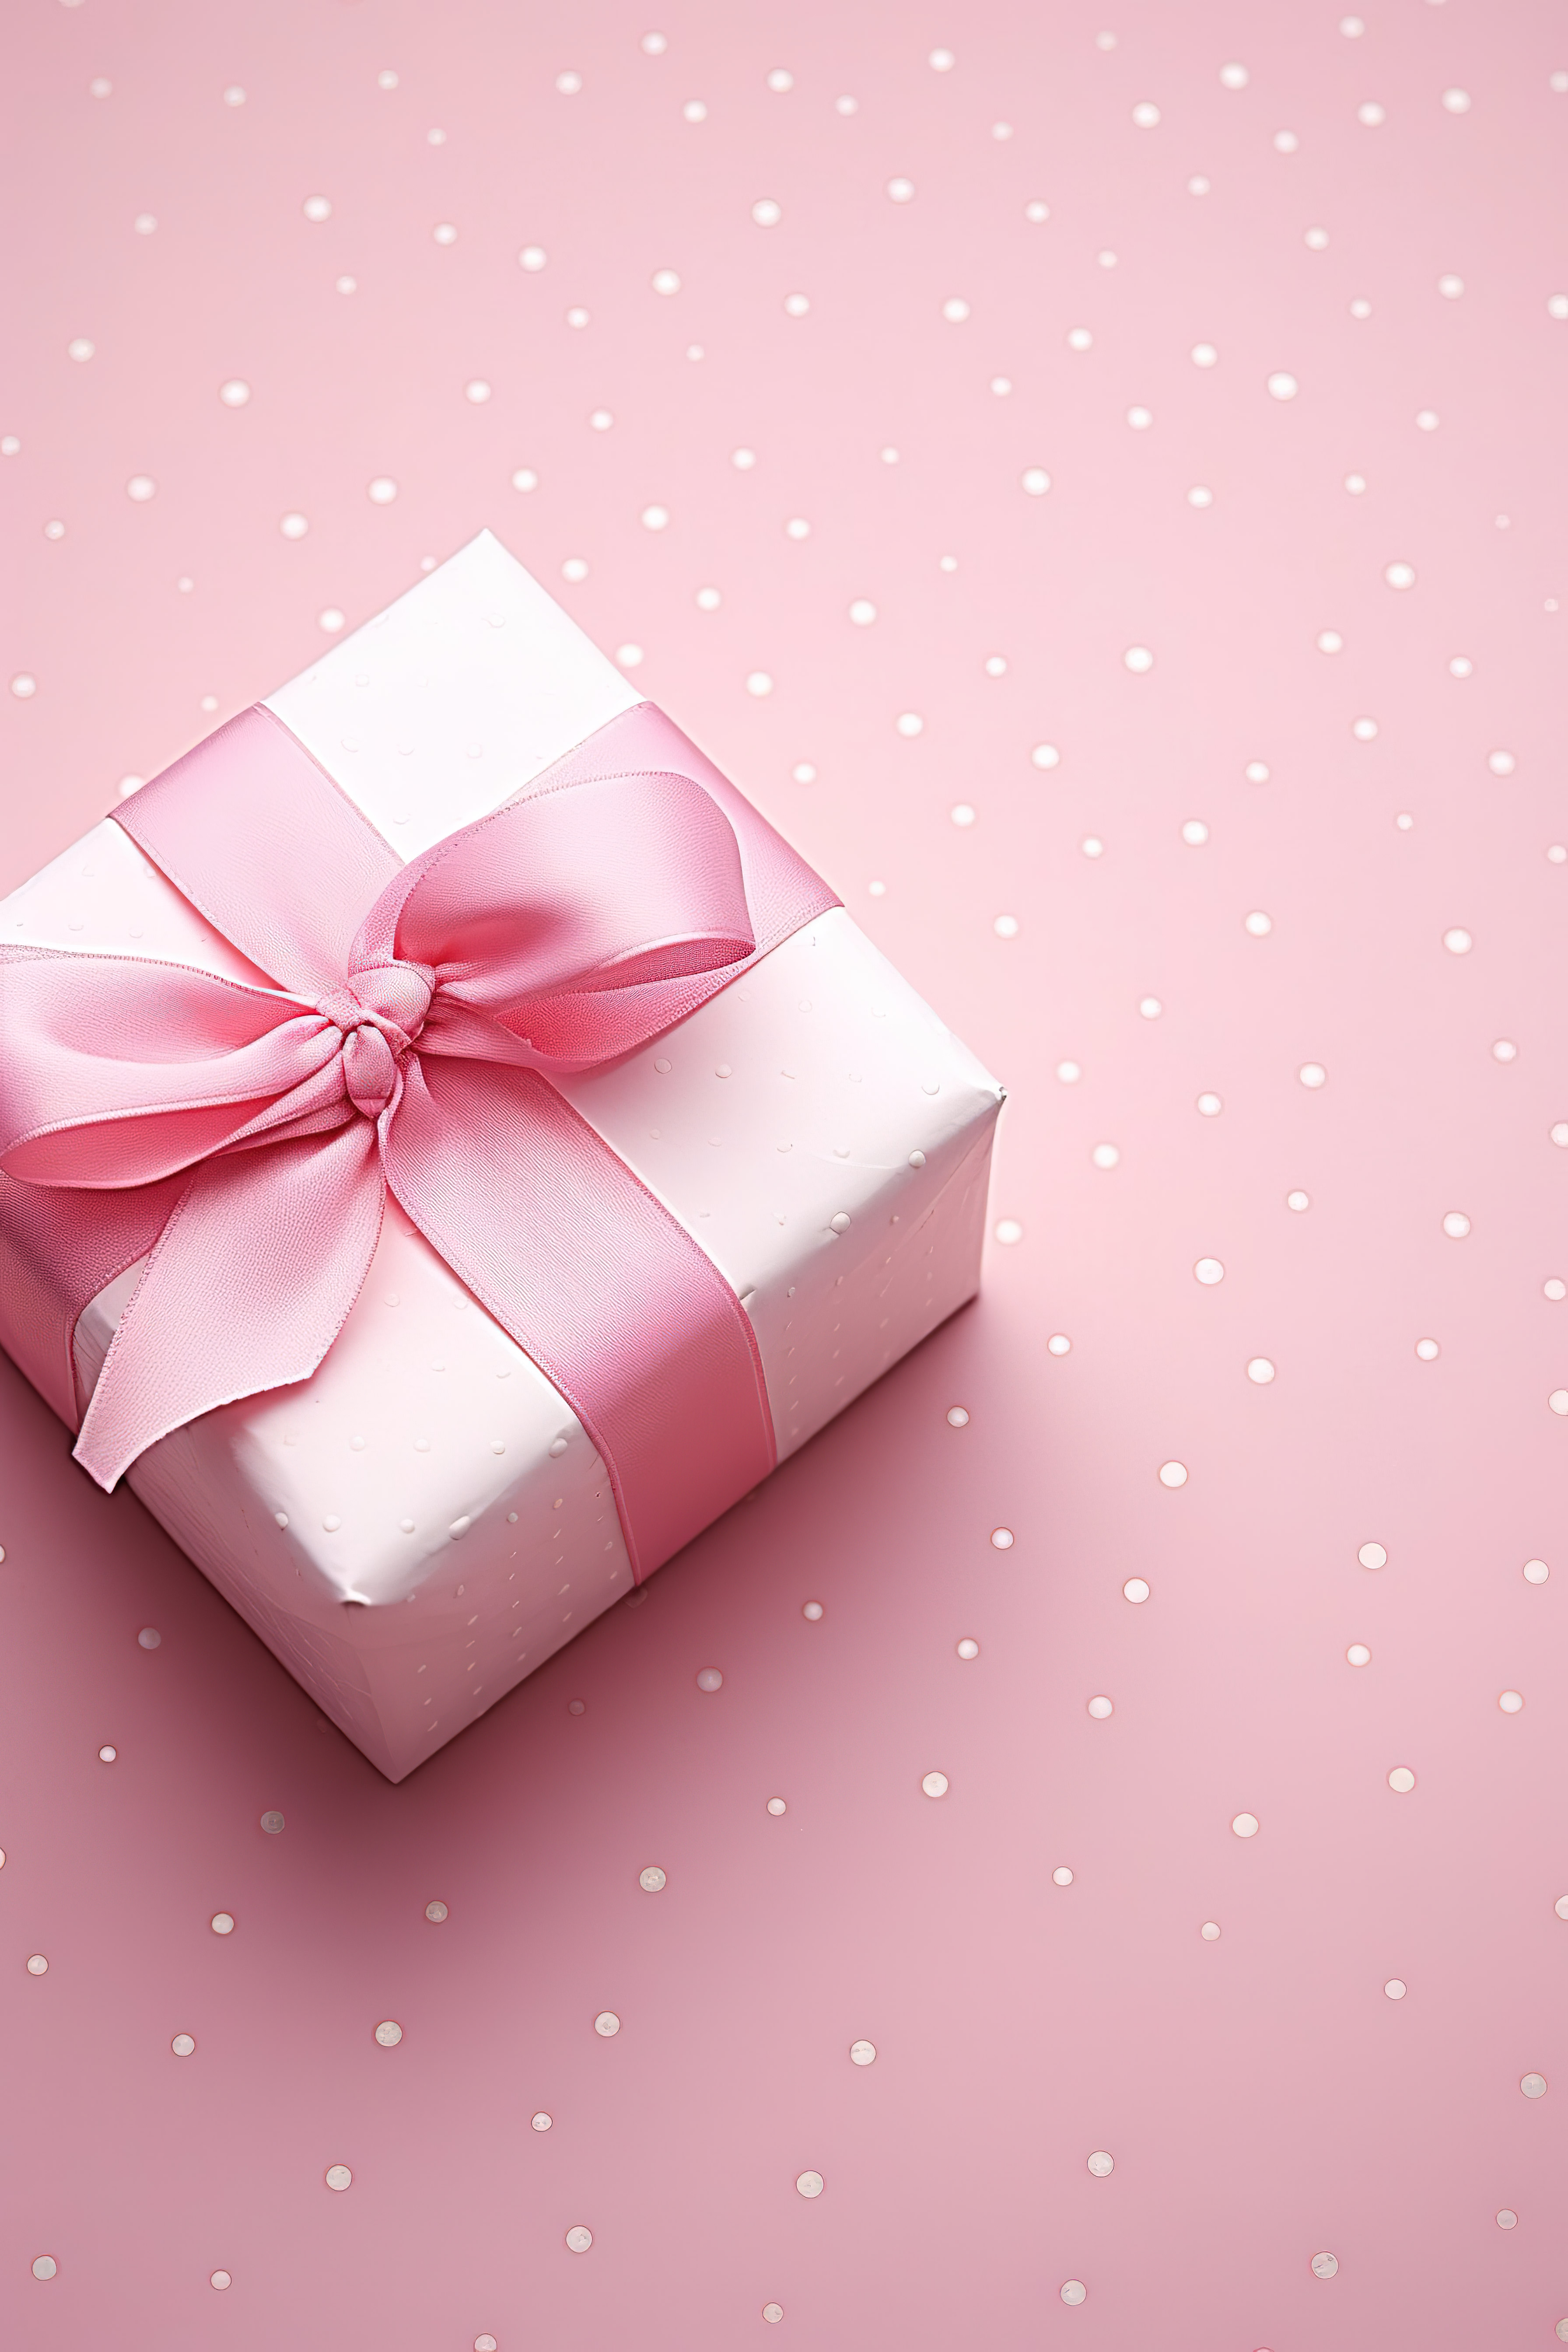 可爱的粉色礼盒和粉色心形图案图片